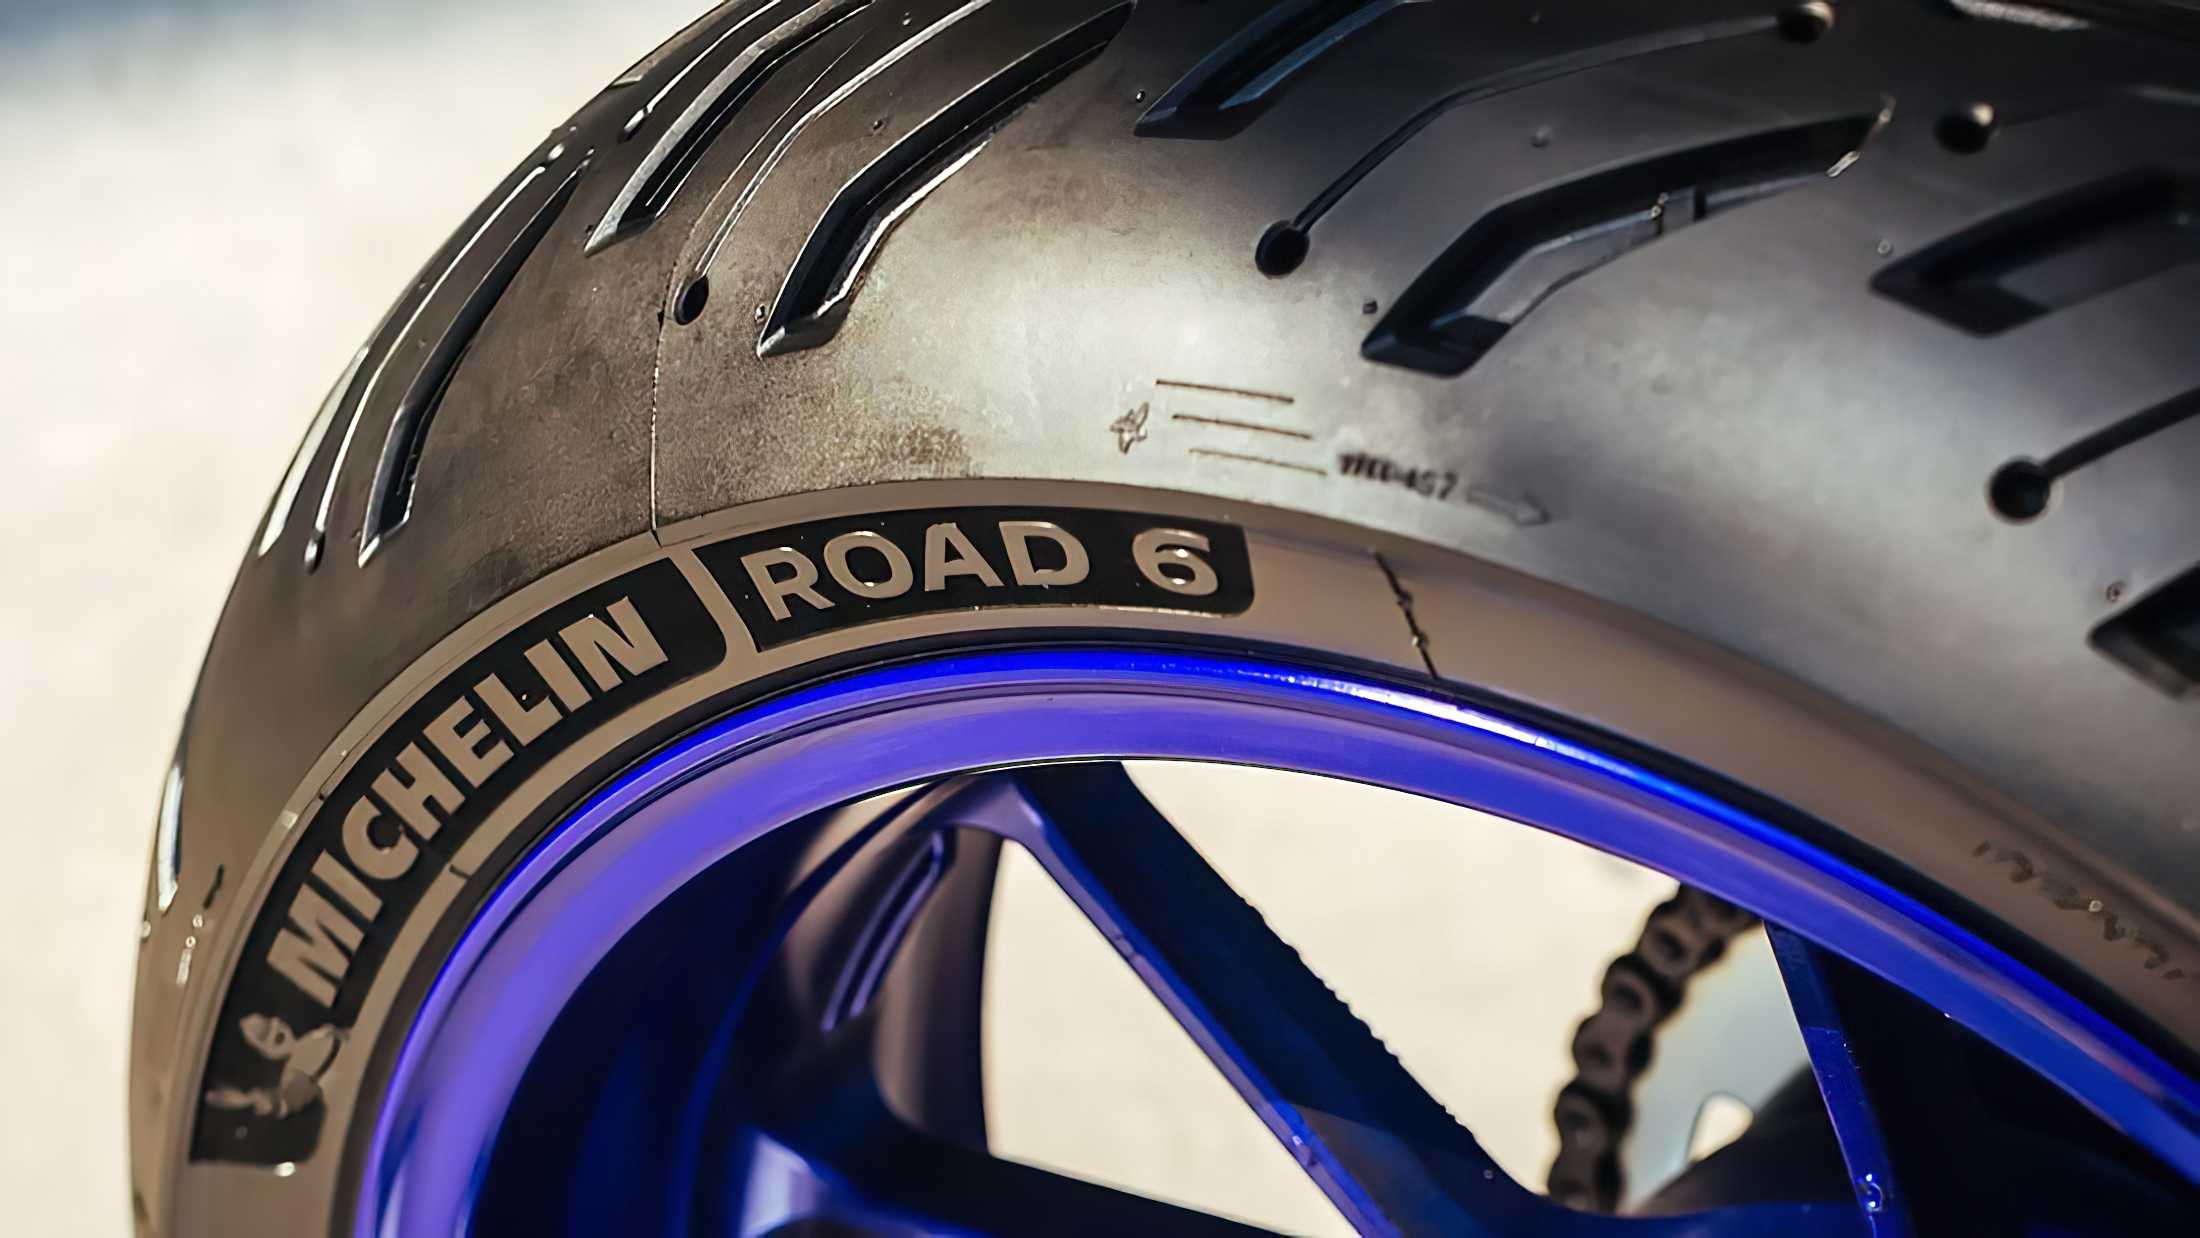 Neu: Michelin Road 6
- auch in der MOTORRAD NACHRICHTEN APP